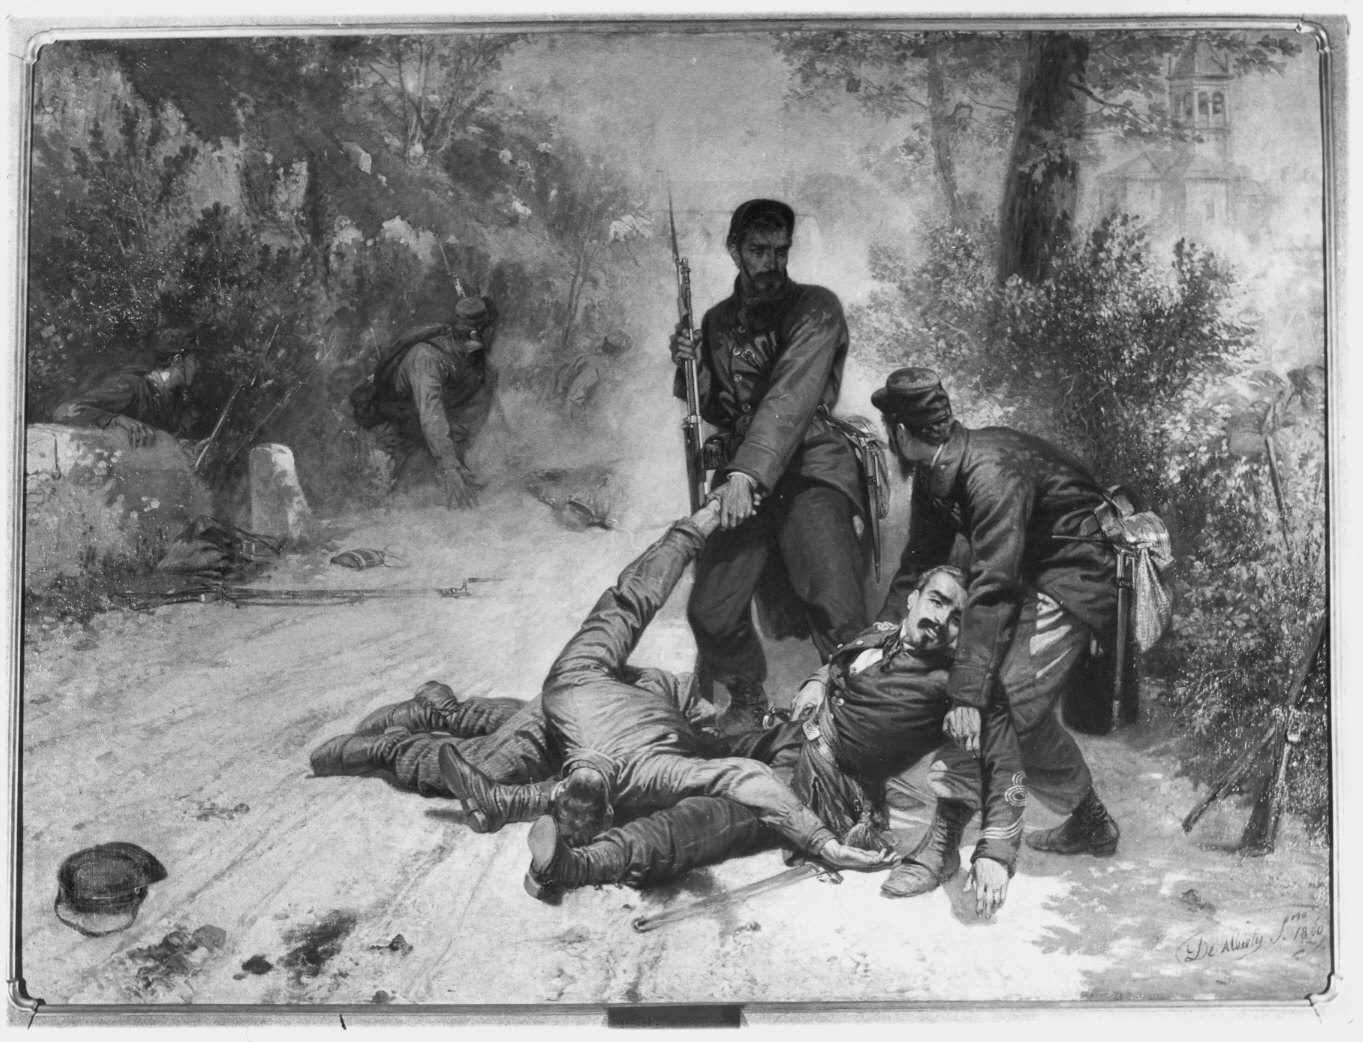 Morte del Cap. De Cristoforis - S. Fermo - 27 maggio 1859 (dipinto) di De Albertis Sebastiano (attribuito) (sec. XIX)